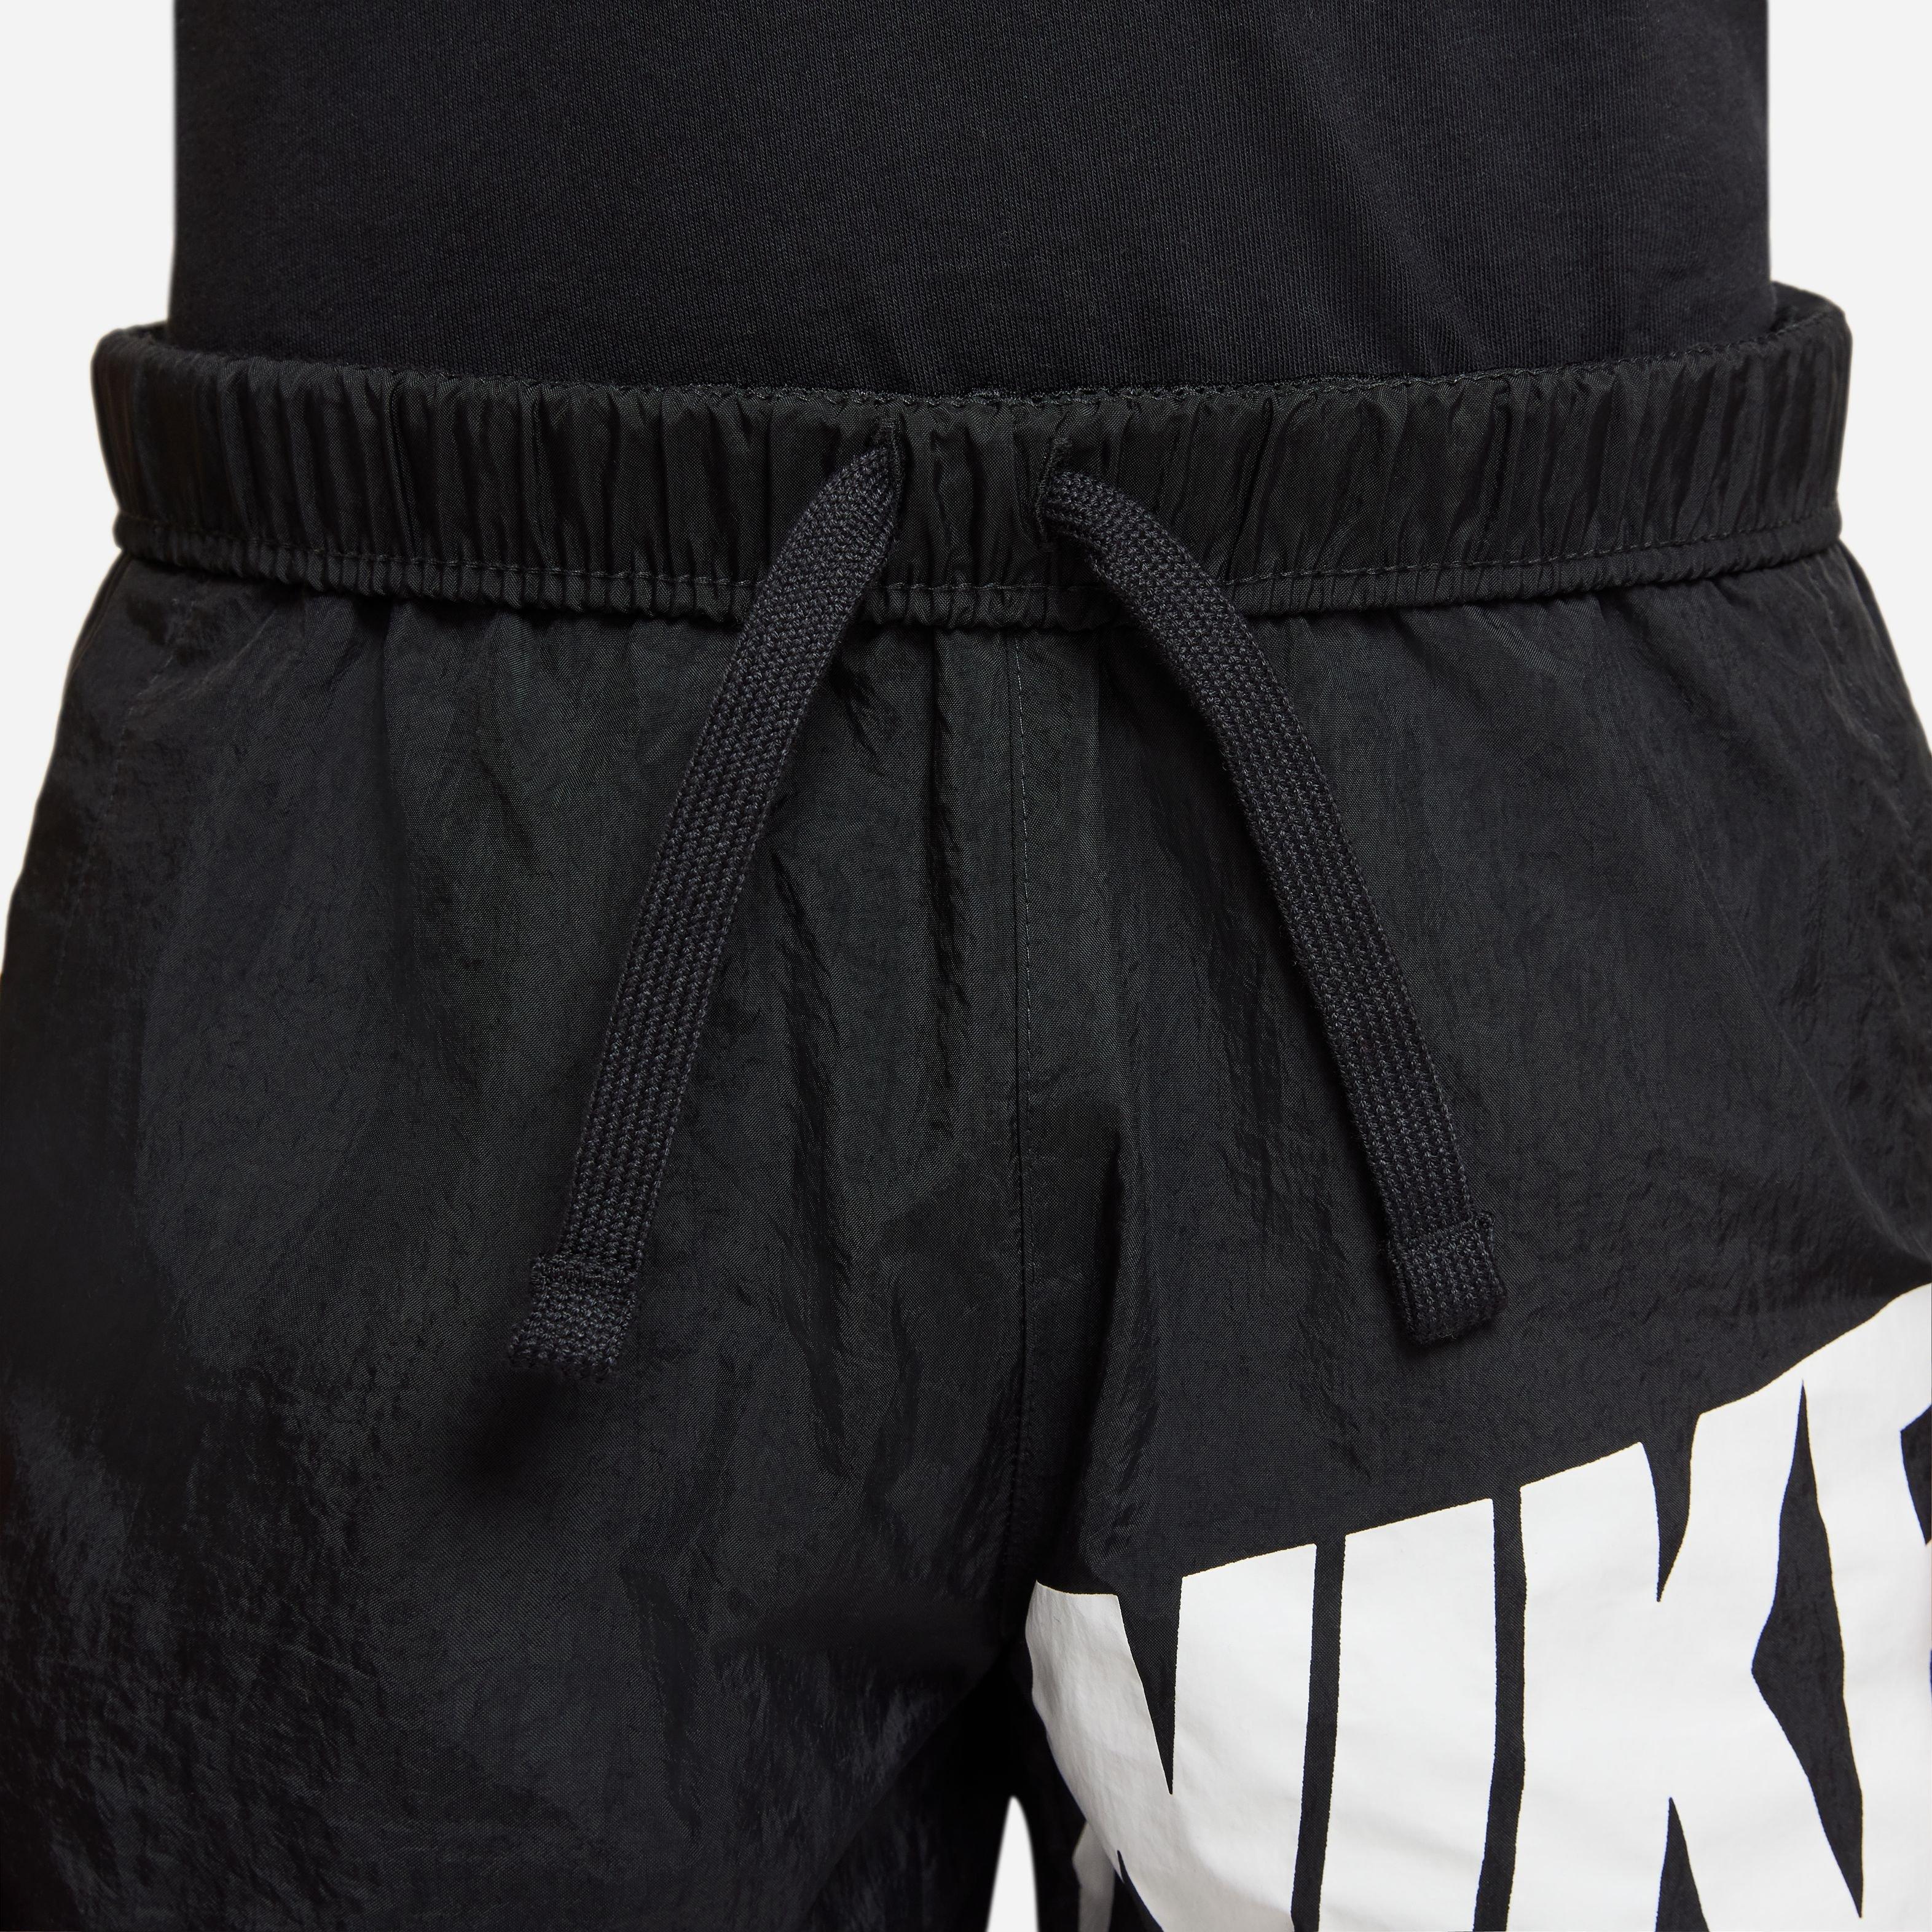 Nike Big Boys' Sportswear Woven Shorts Orange, Size: Large, Nylon/Polyester